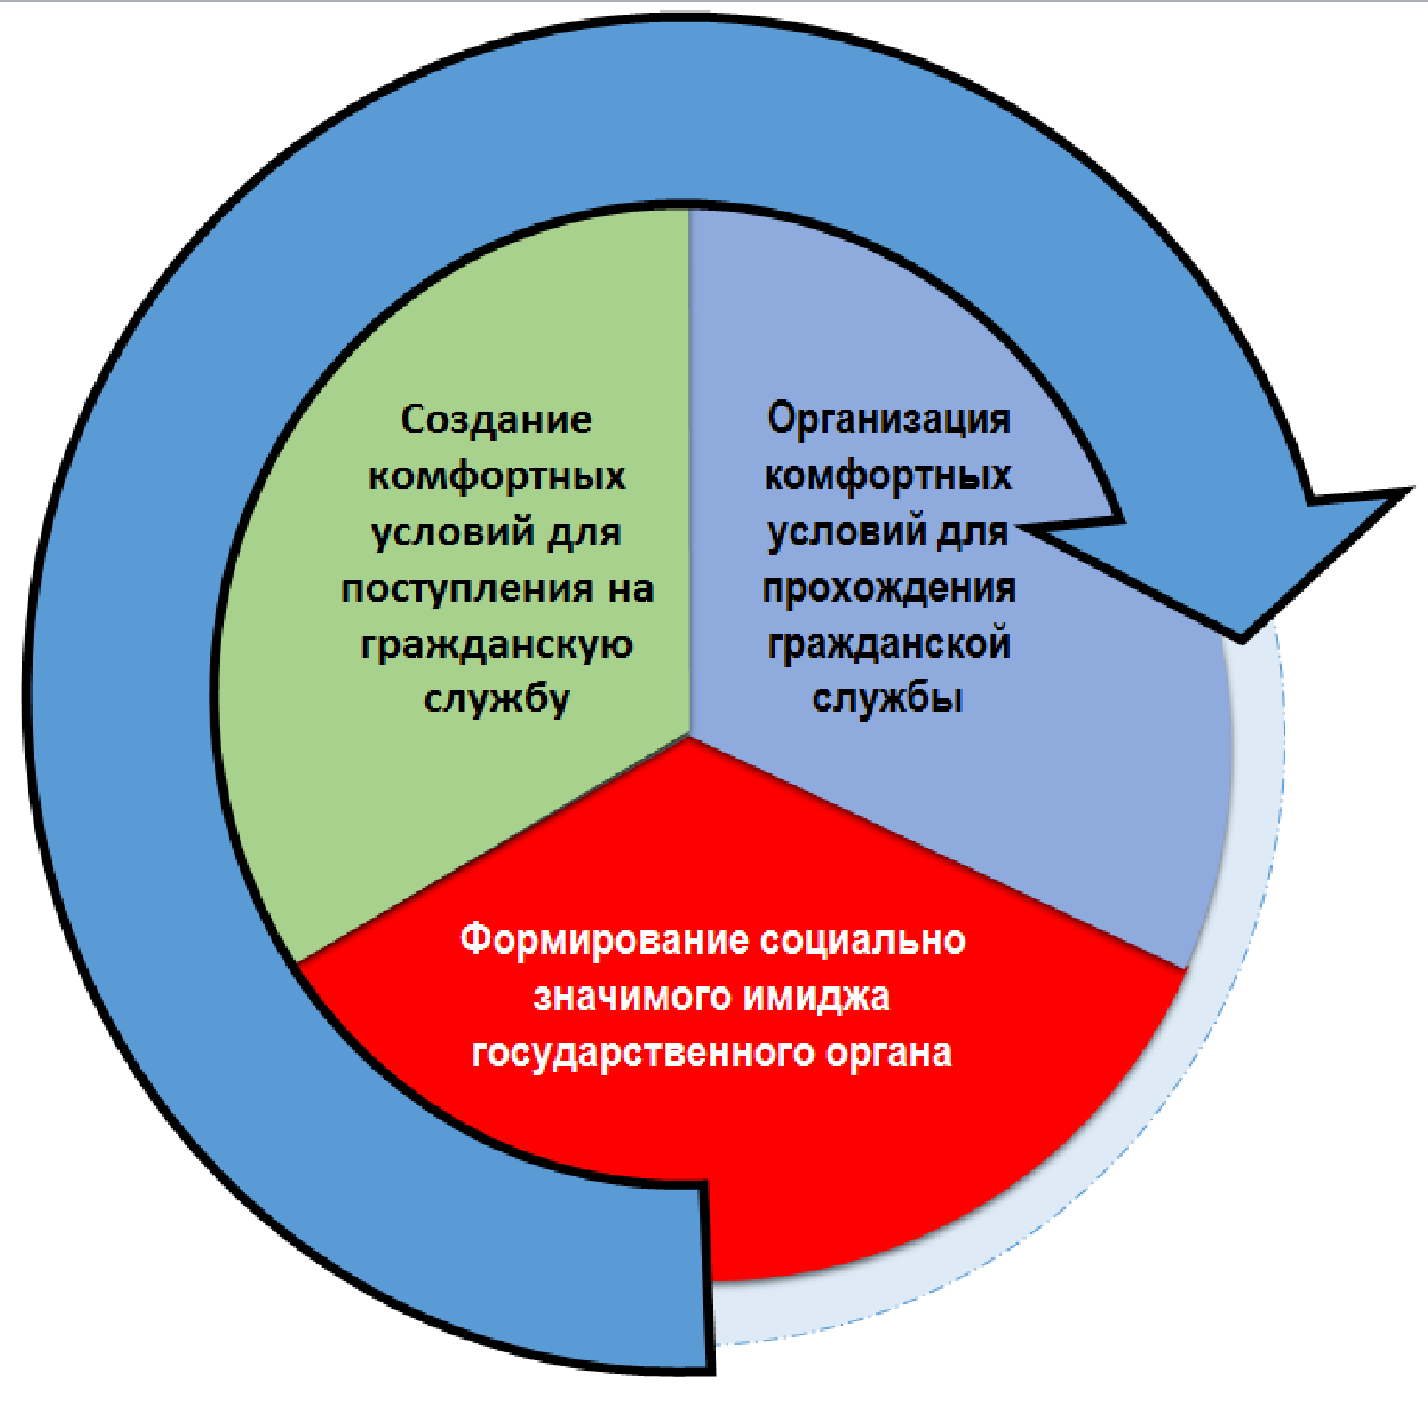 Курсовая работа по теме Президент РФ в системе управления государством: его функции, права и обязанности